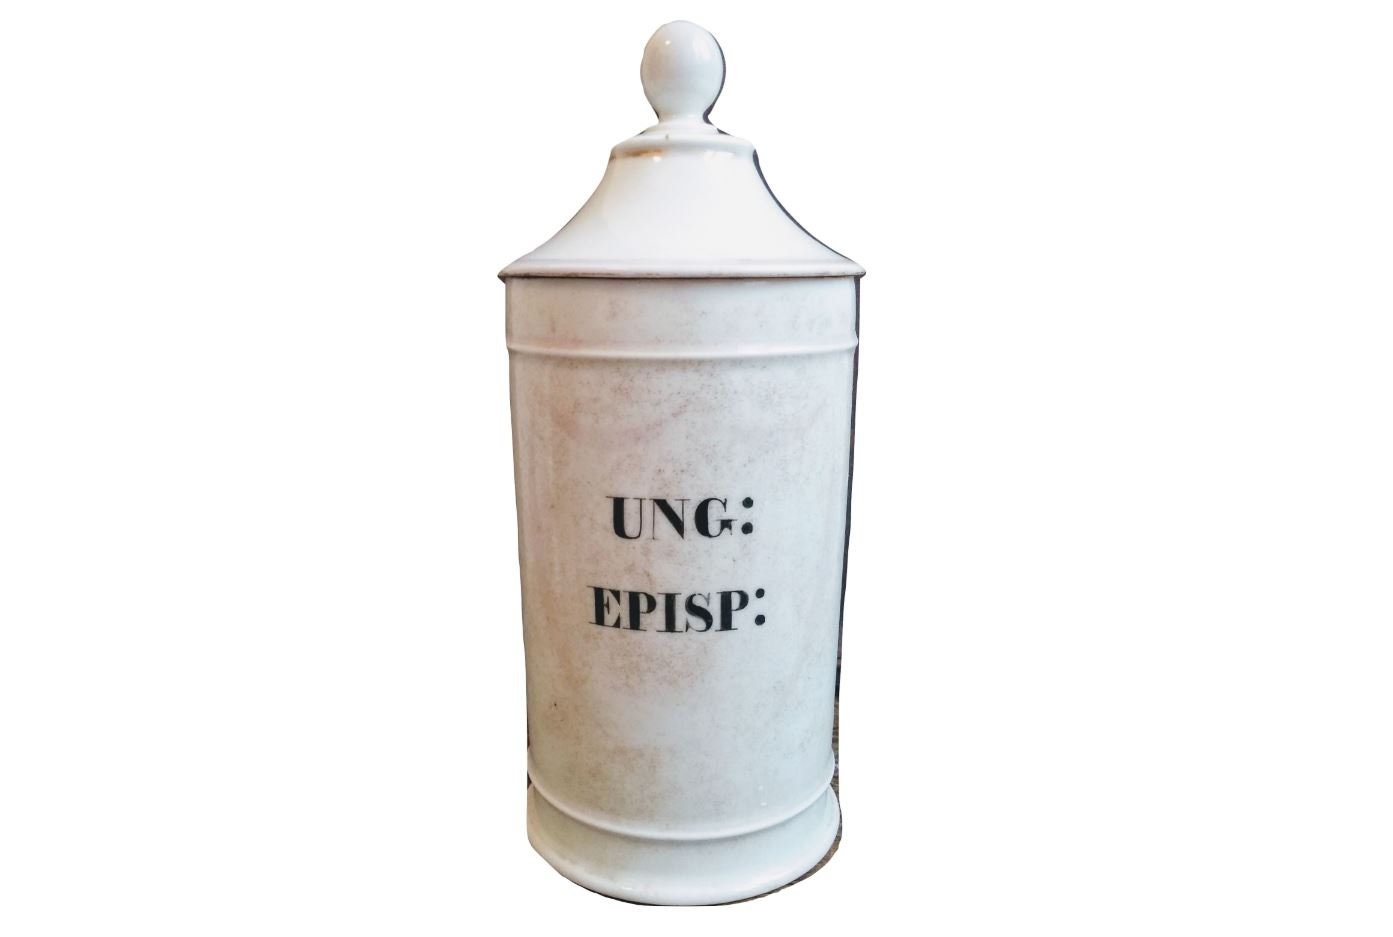 Antique Français Ung Episp White Porcelain Ceramic Pharmacy Medical Apothecary Pot Vase Container St